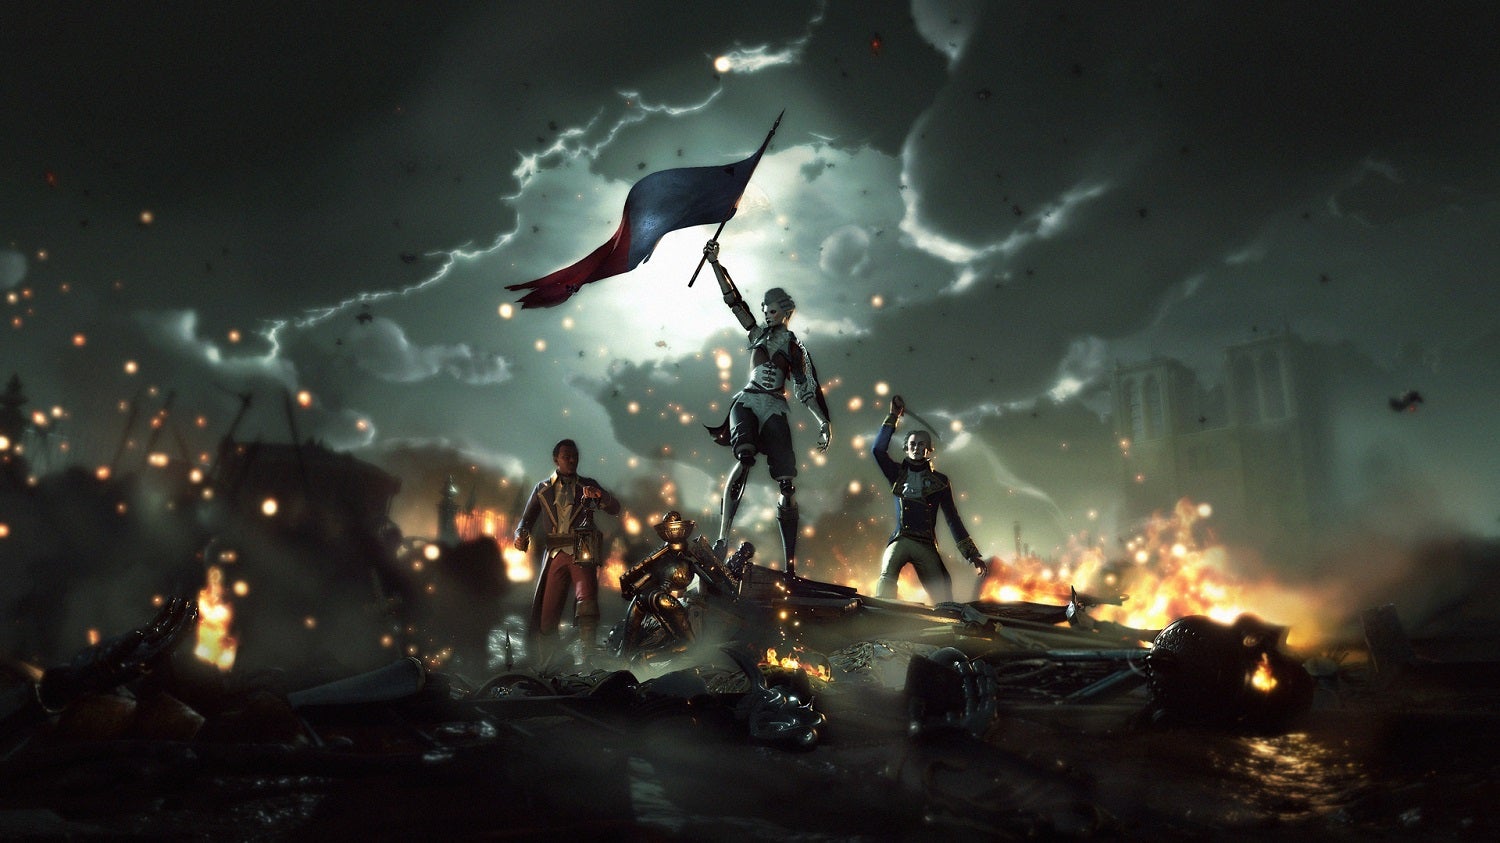 Obrazki dla Rewolucja francuska z robotami - nowy zwiastun Steelrising od twórców Greedfall